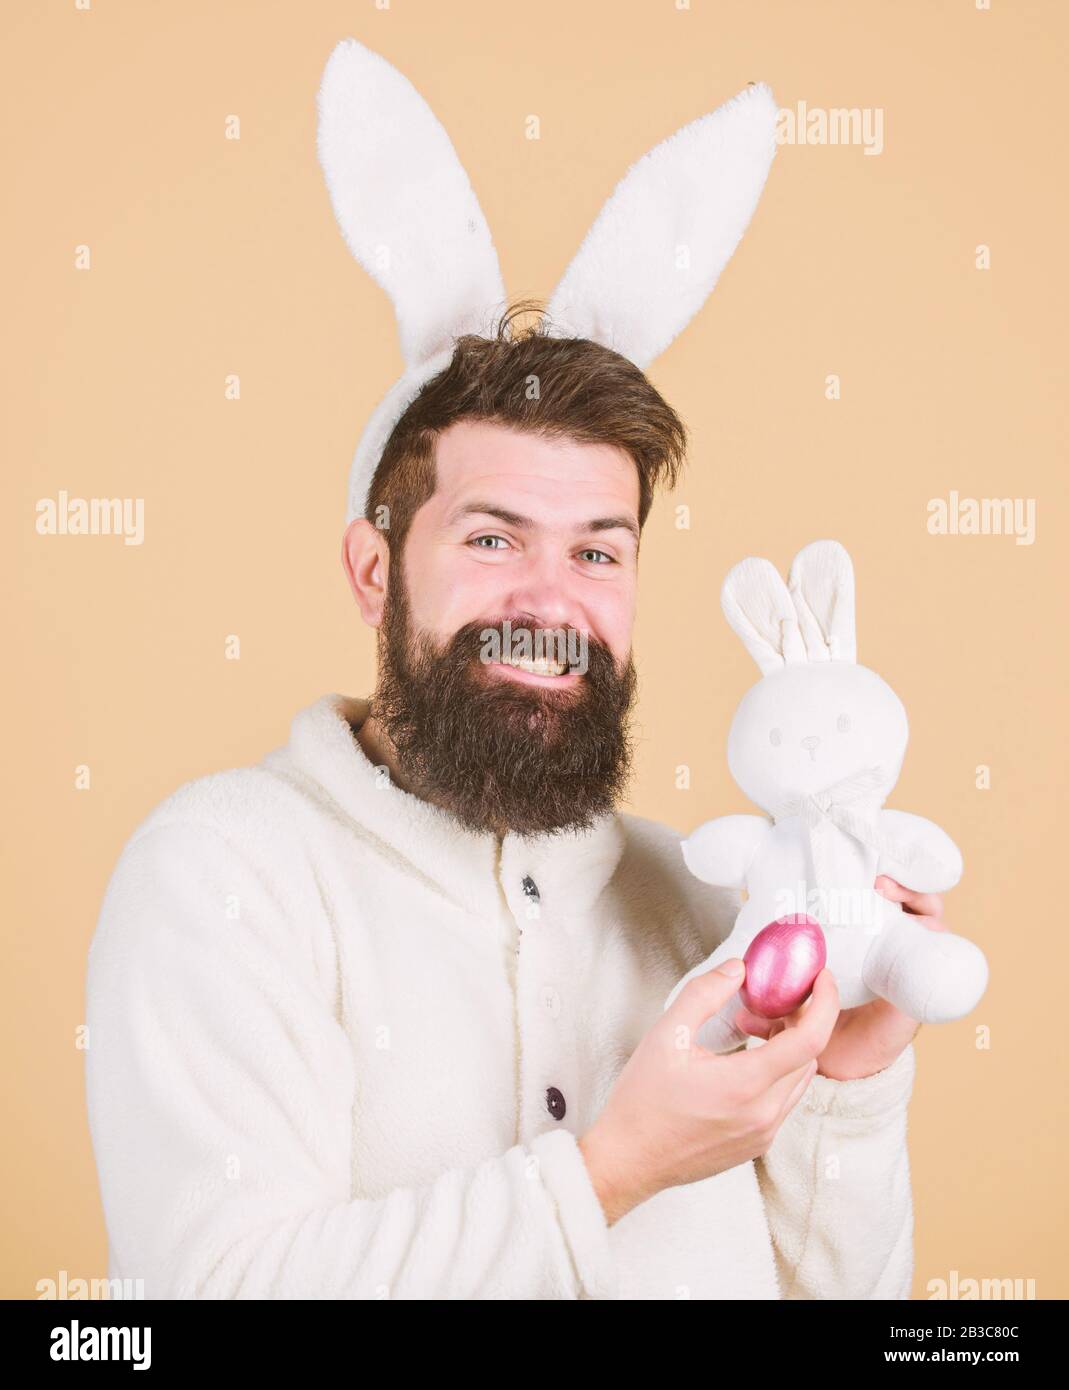 Funny bunny man orecchie morbide. L'uomo che indossa il vestito di coniglio  gioca con il giocattolo. Concetto di attività pasquali. Ancora infantile.  Festeggiate La Pasqua. Ragazzo bunny hippster allegro con lunghe orecchie